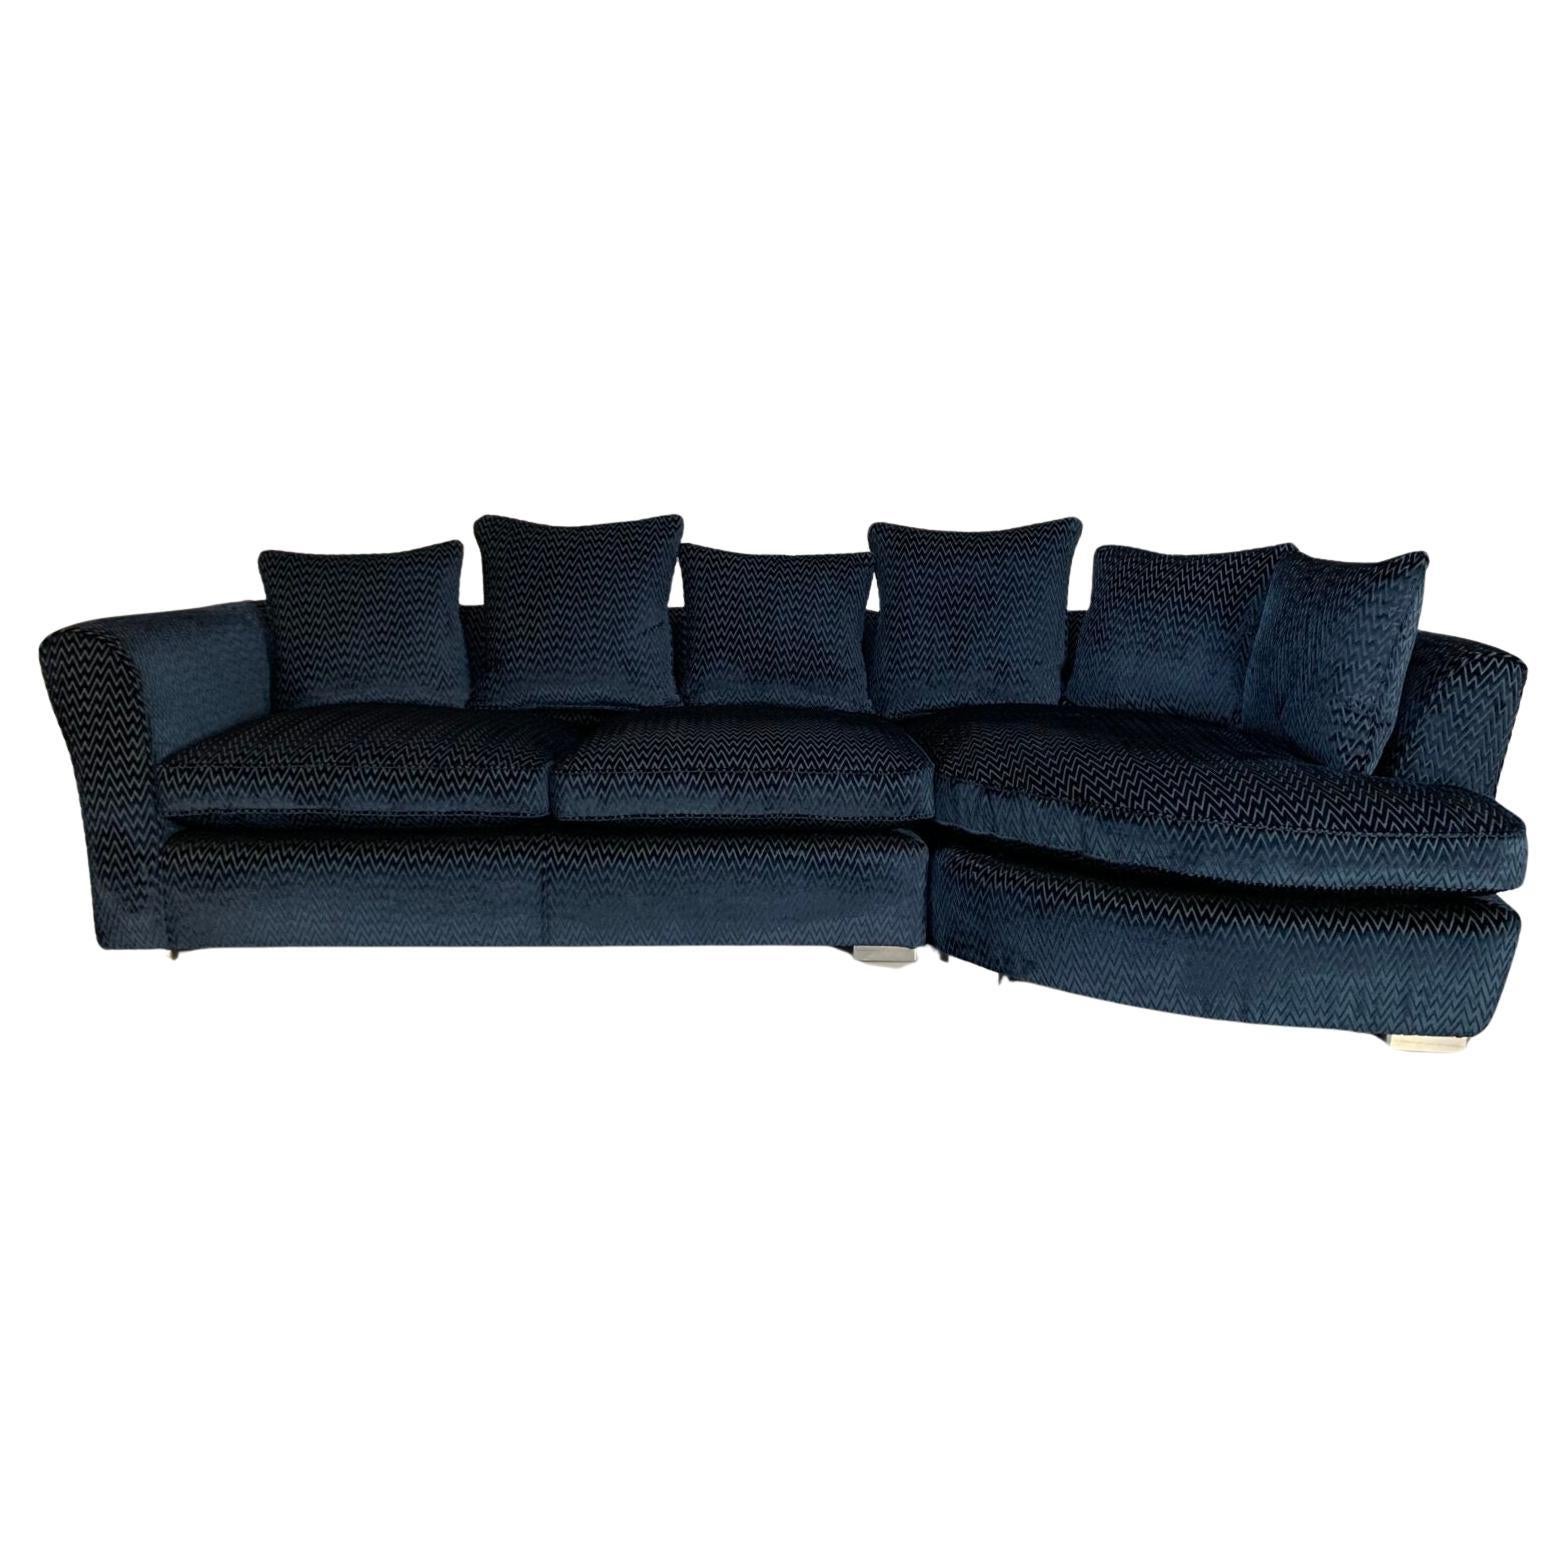 Fendi Casa 4-Seat Chaise-End Sofa - In Navy Blue Zig-Zag Velvet For Sale